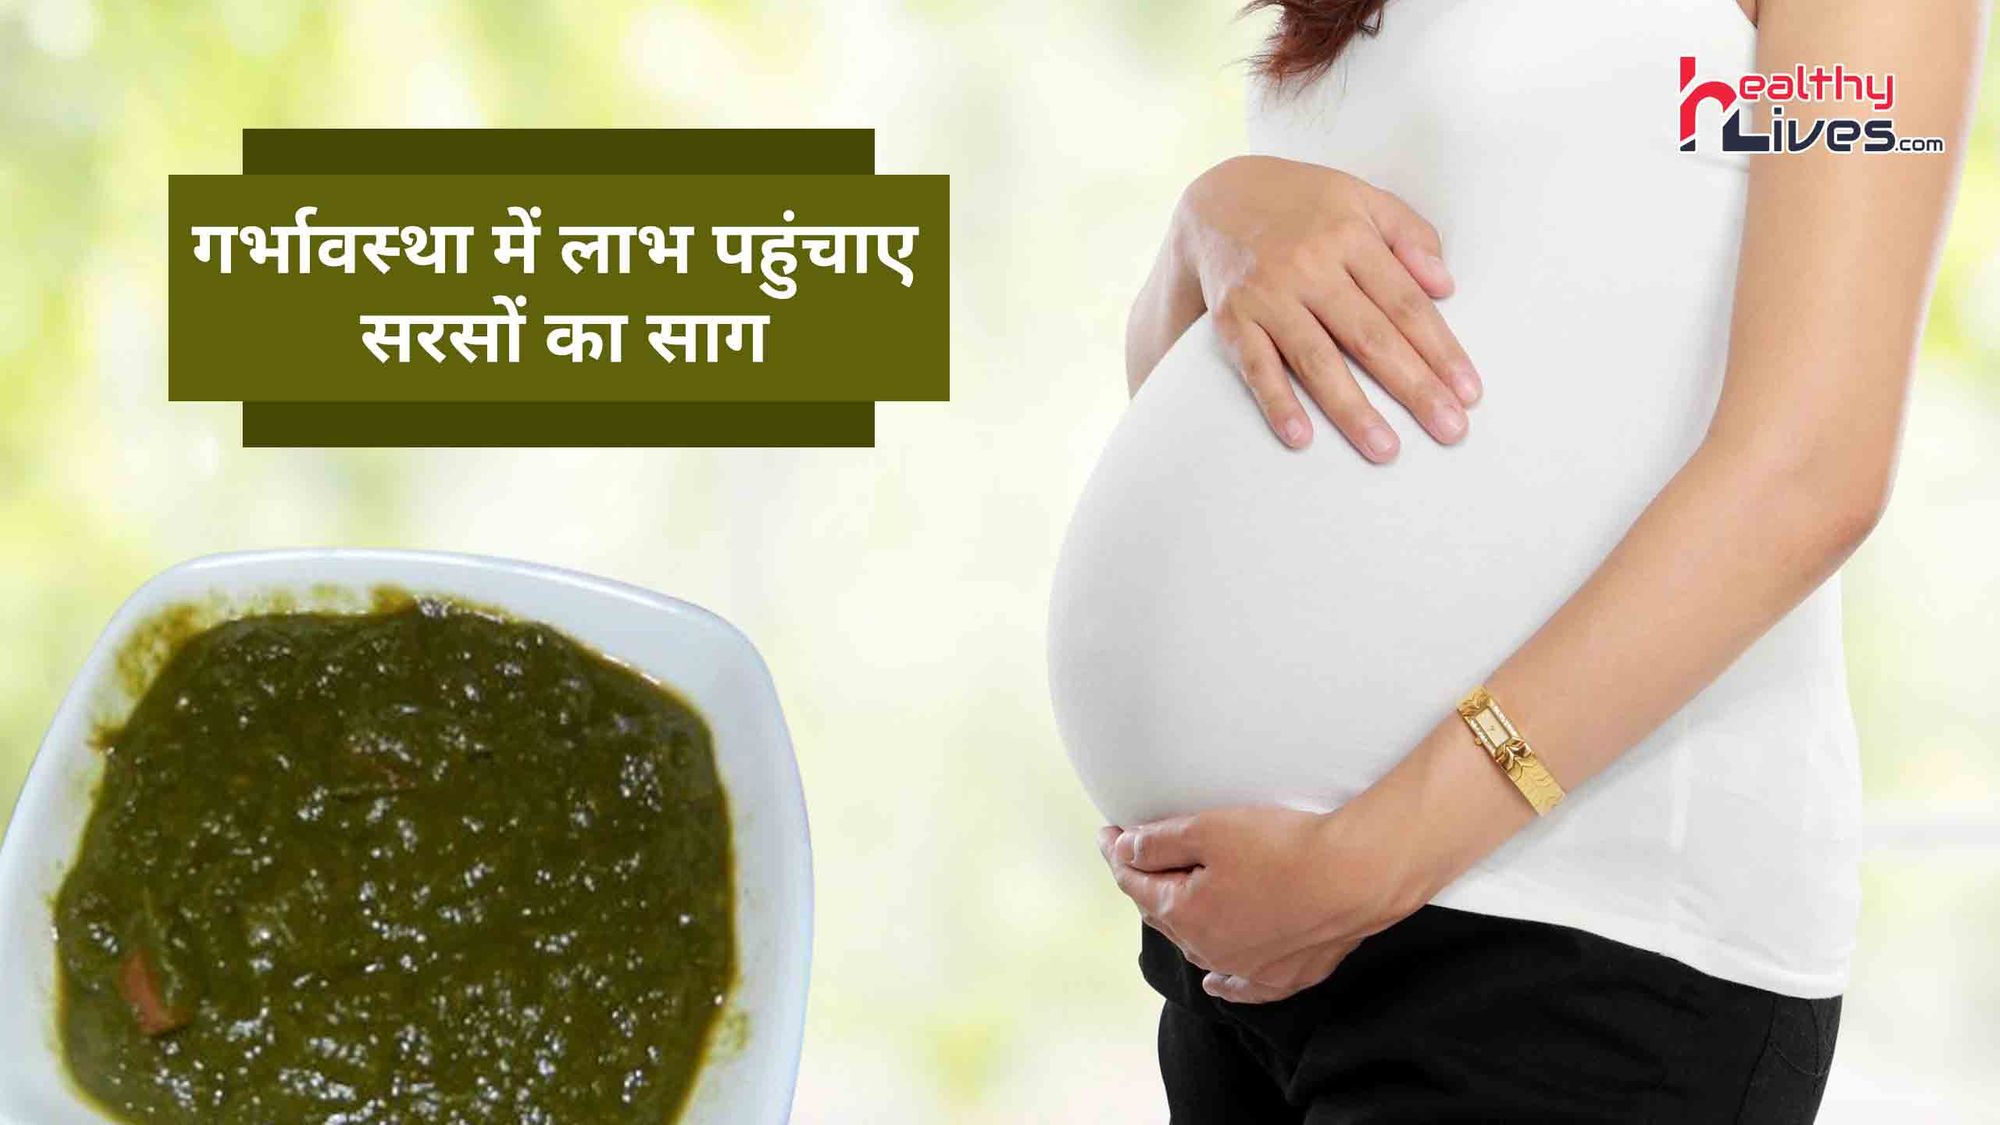 Sarson Ka Saag In Pregnancy: गर्भावस्था में सरसों का साग देता है कई प्रकार के राहत